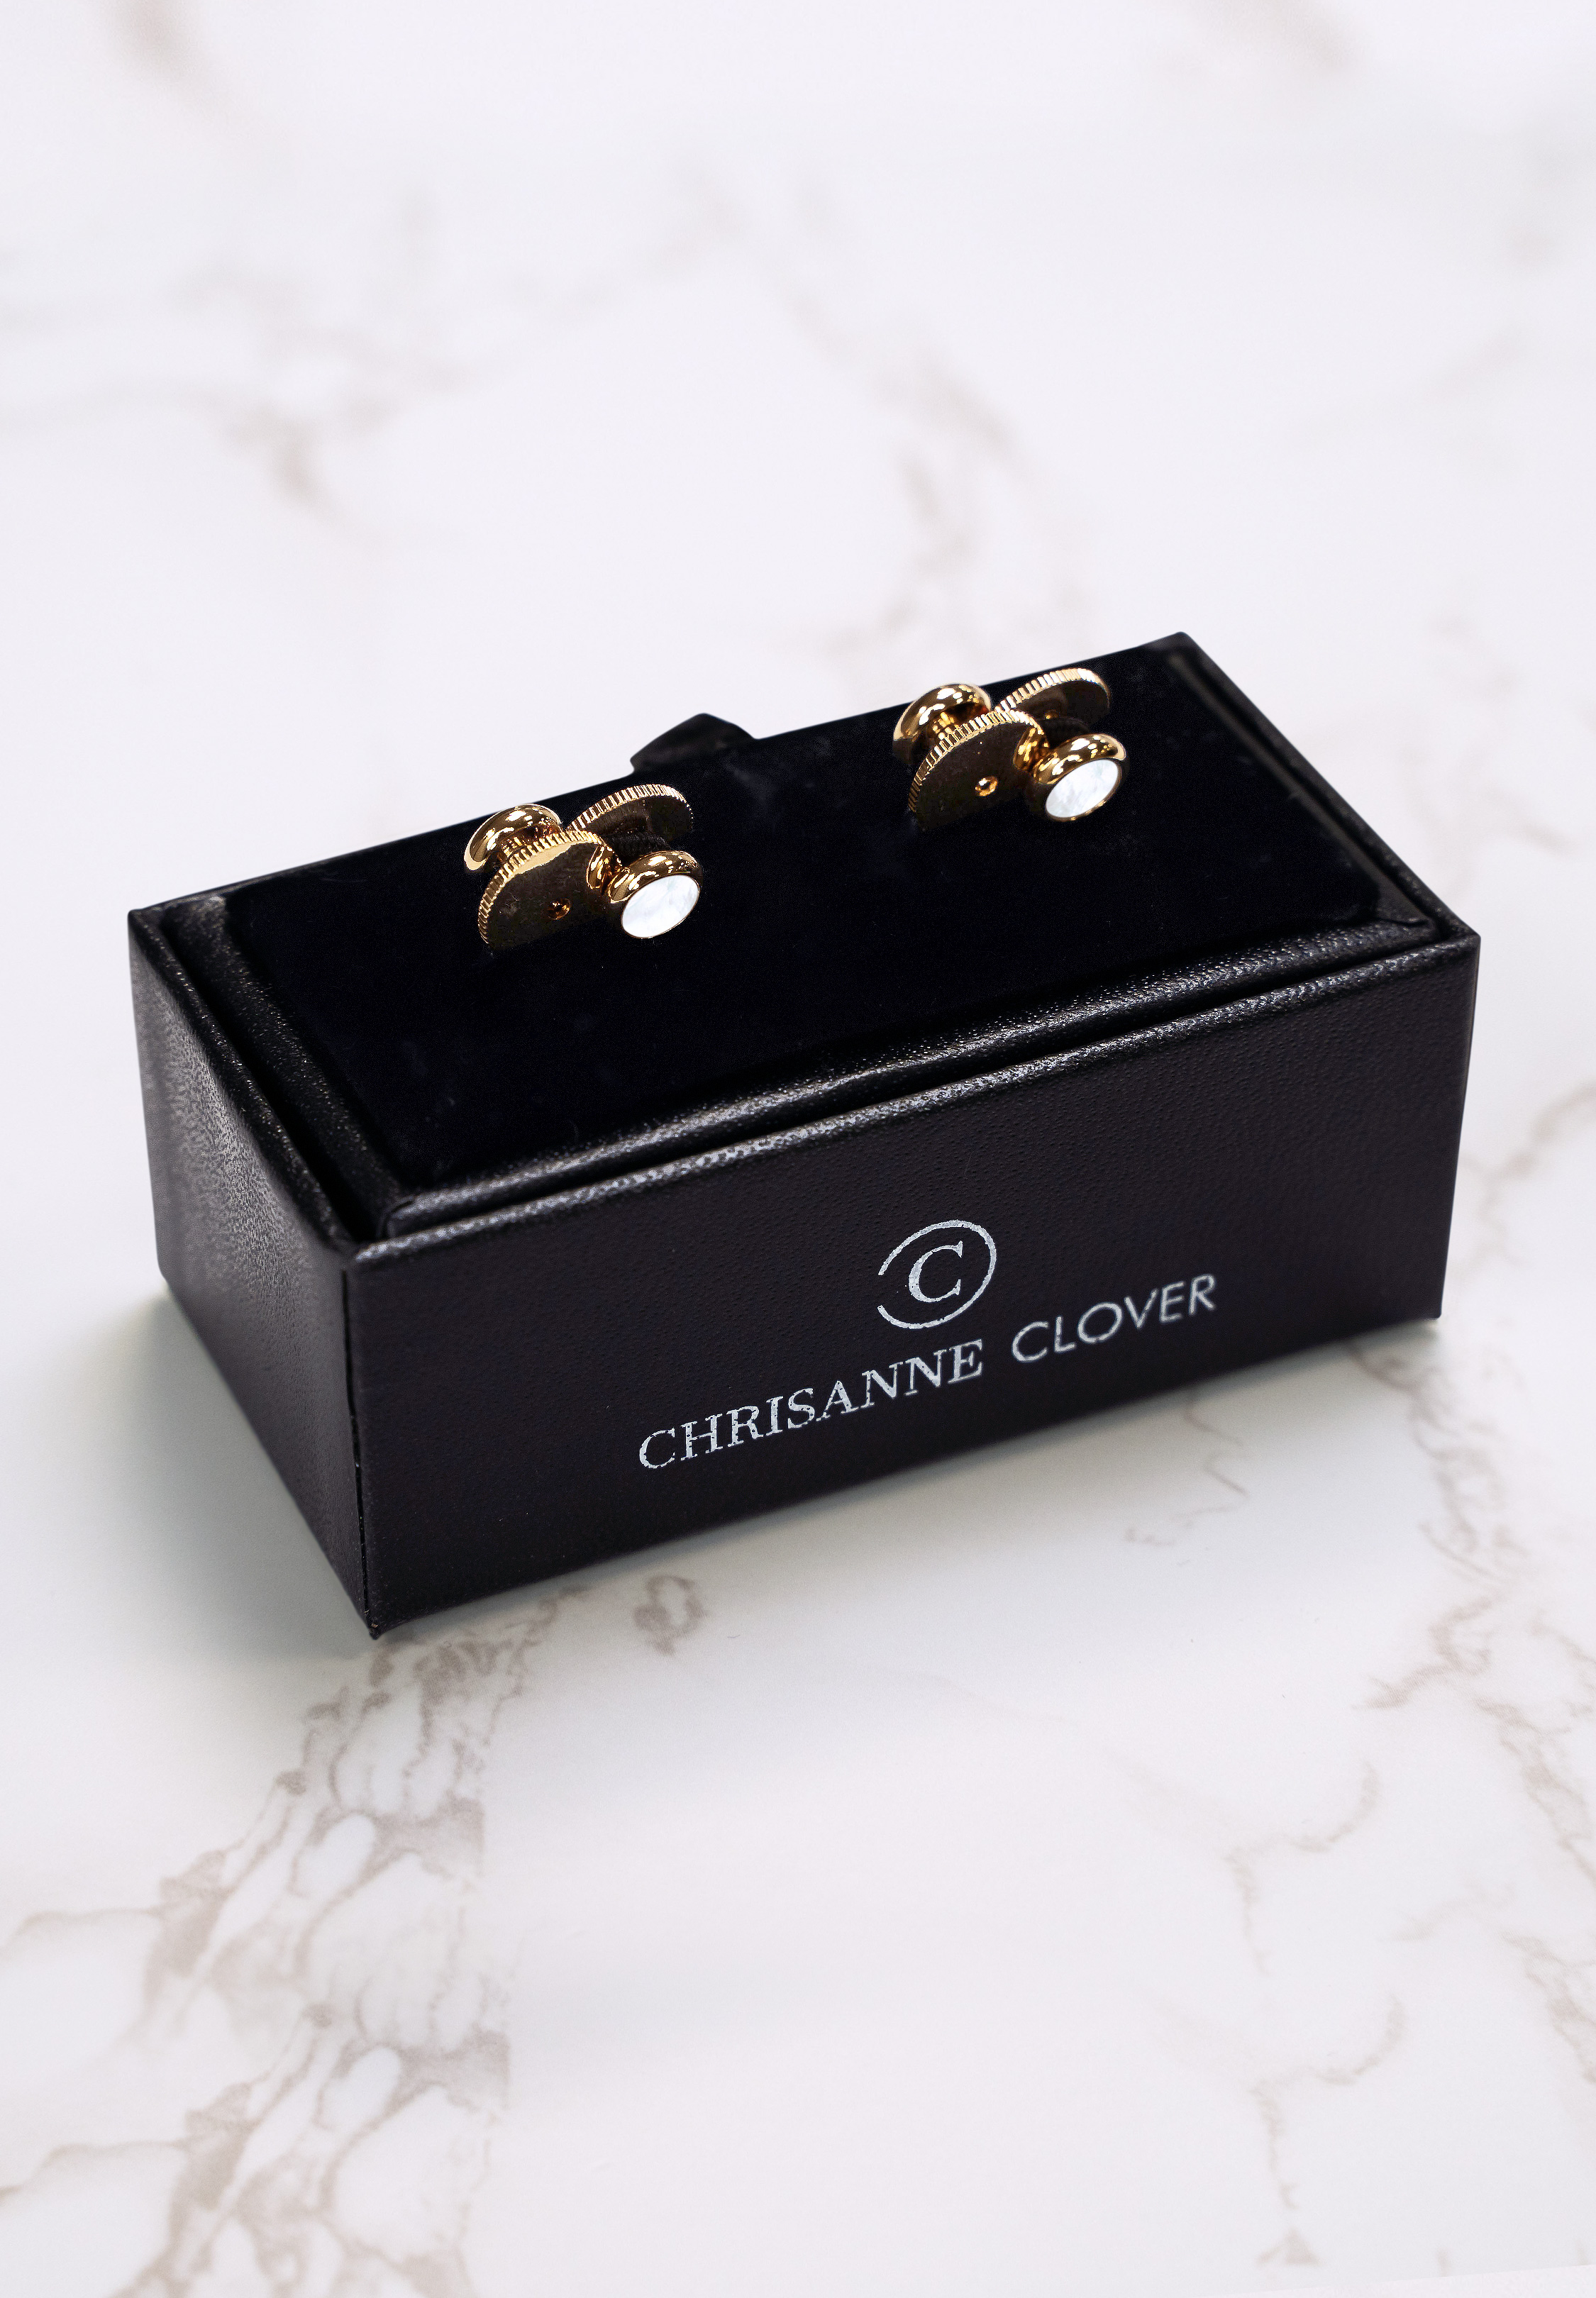 Chrisanne Clover Gold Dress Studs